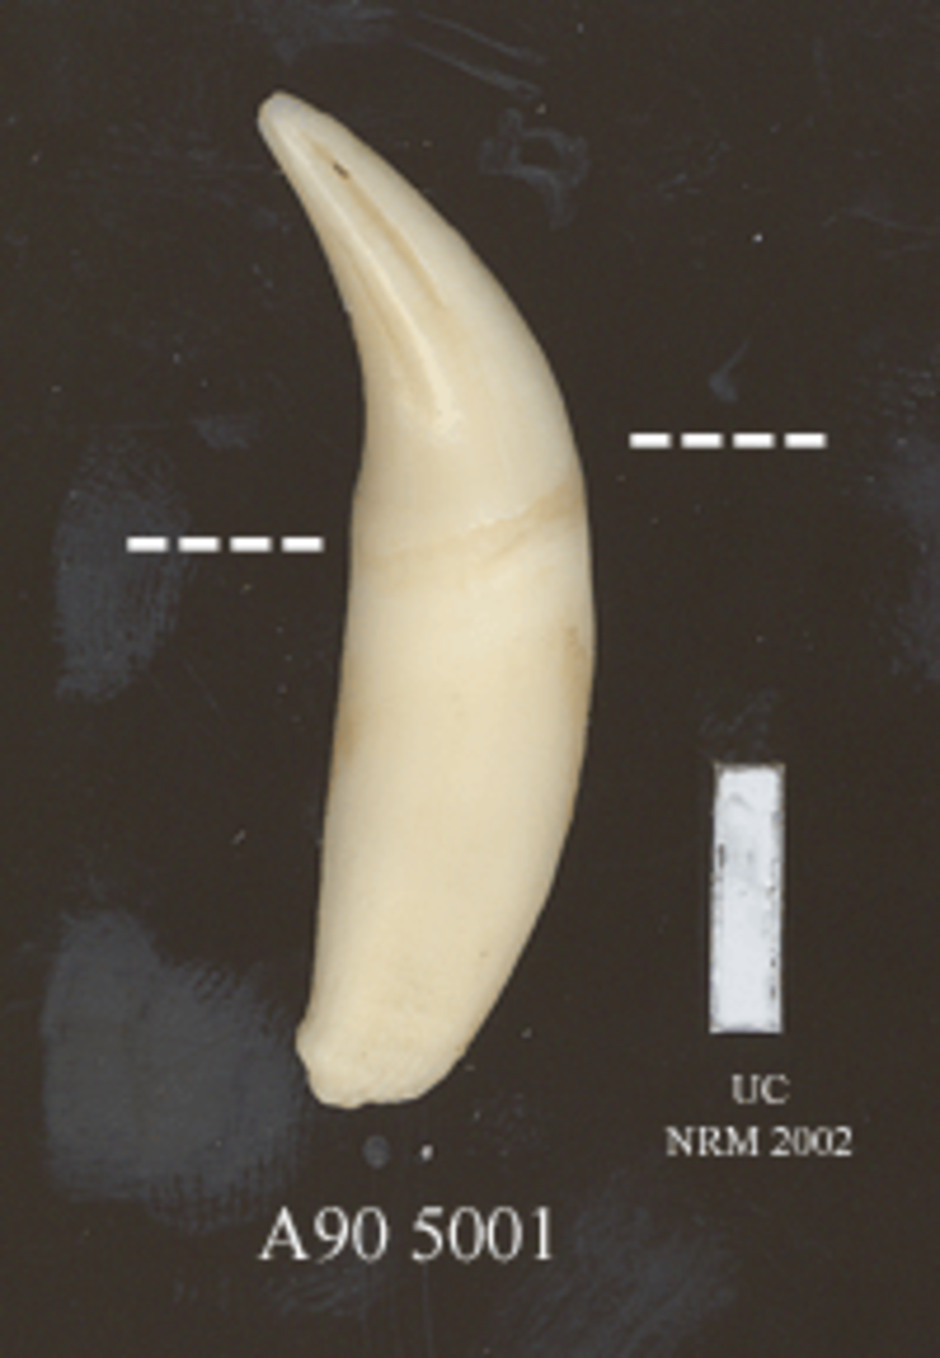 Detalj av hörntanden. Den streckade linjen markerar gränsen för tandens infattning i käkbenet. Skalstrecket = 10 mm.